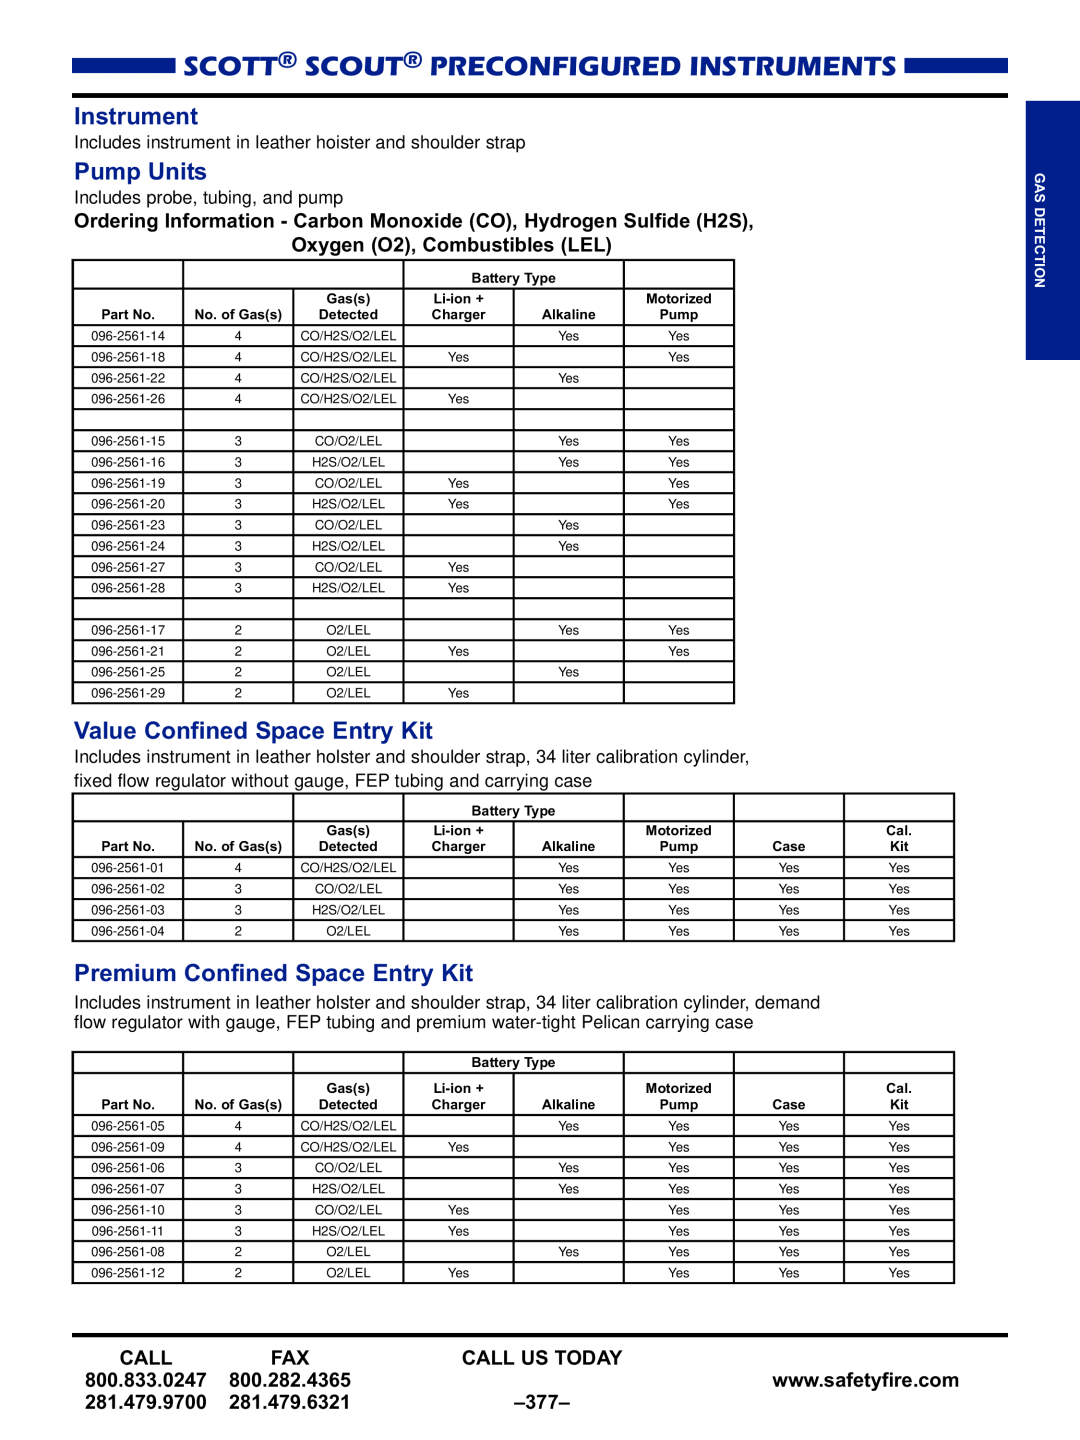 Black & Decker MULTI-GAS DETECTORS manual Scott Scout Preconfigured Instruments, Pump Units, Value Confined Space Entry Kit 